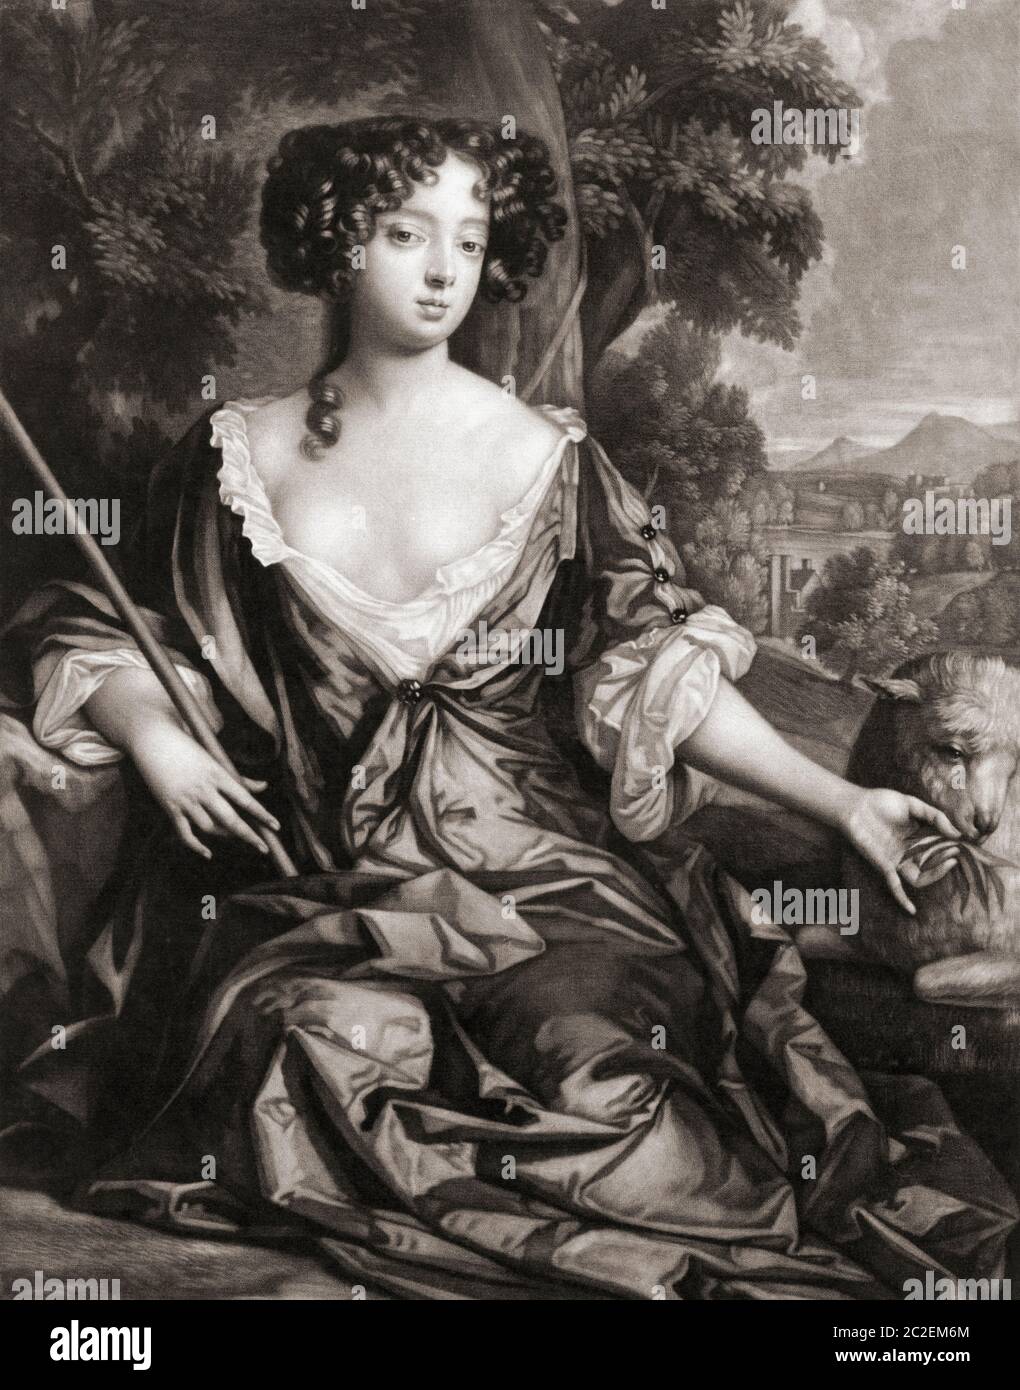 Louise Renée de Penancoët de Kérouaille, Herzogin von Portsmouth, 1649 - 1734. Französisch geboren Geliebte von König Karl II von England. Aus und Illustration von Gerard Valck nach einem Gemälde von Sir Peter Lely. Stockfoto